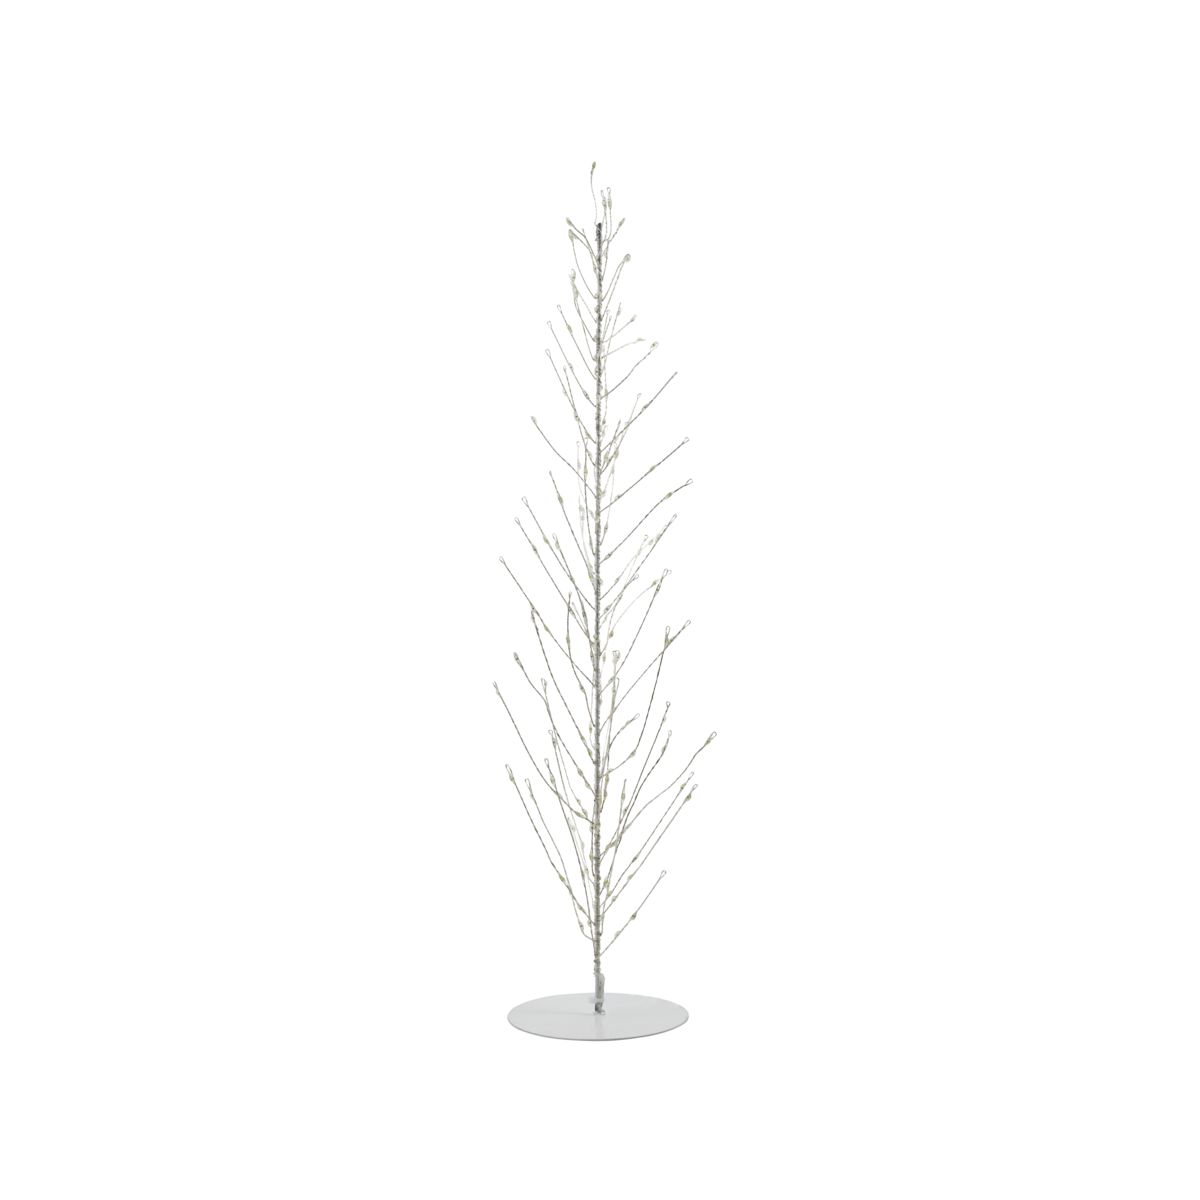 Juletræ i ståltråd, Glow, Hvid - 60 cm